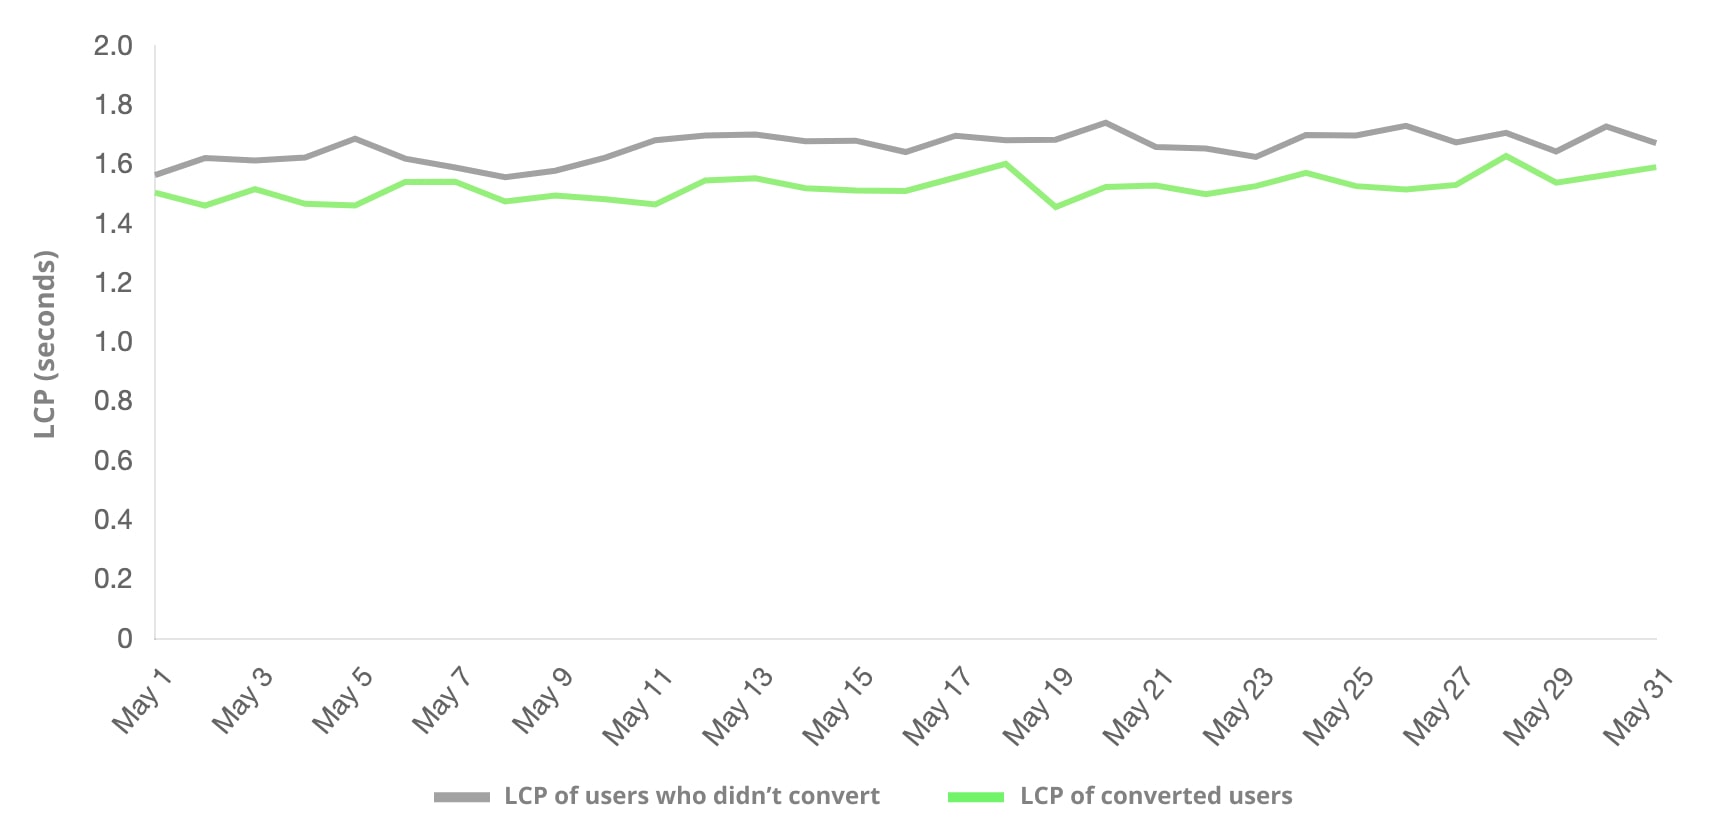 การเปรียบเทียบระหว่างผู้ใช้ที่ทำ Conversion กับผู้ใช้ที่ไม่ได้ทำ Conversion กลุ่มผู้ใช้ที่ทำให้เกิด Conversion บ่อยกว่ามี LCP ต่ำกว่า